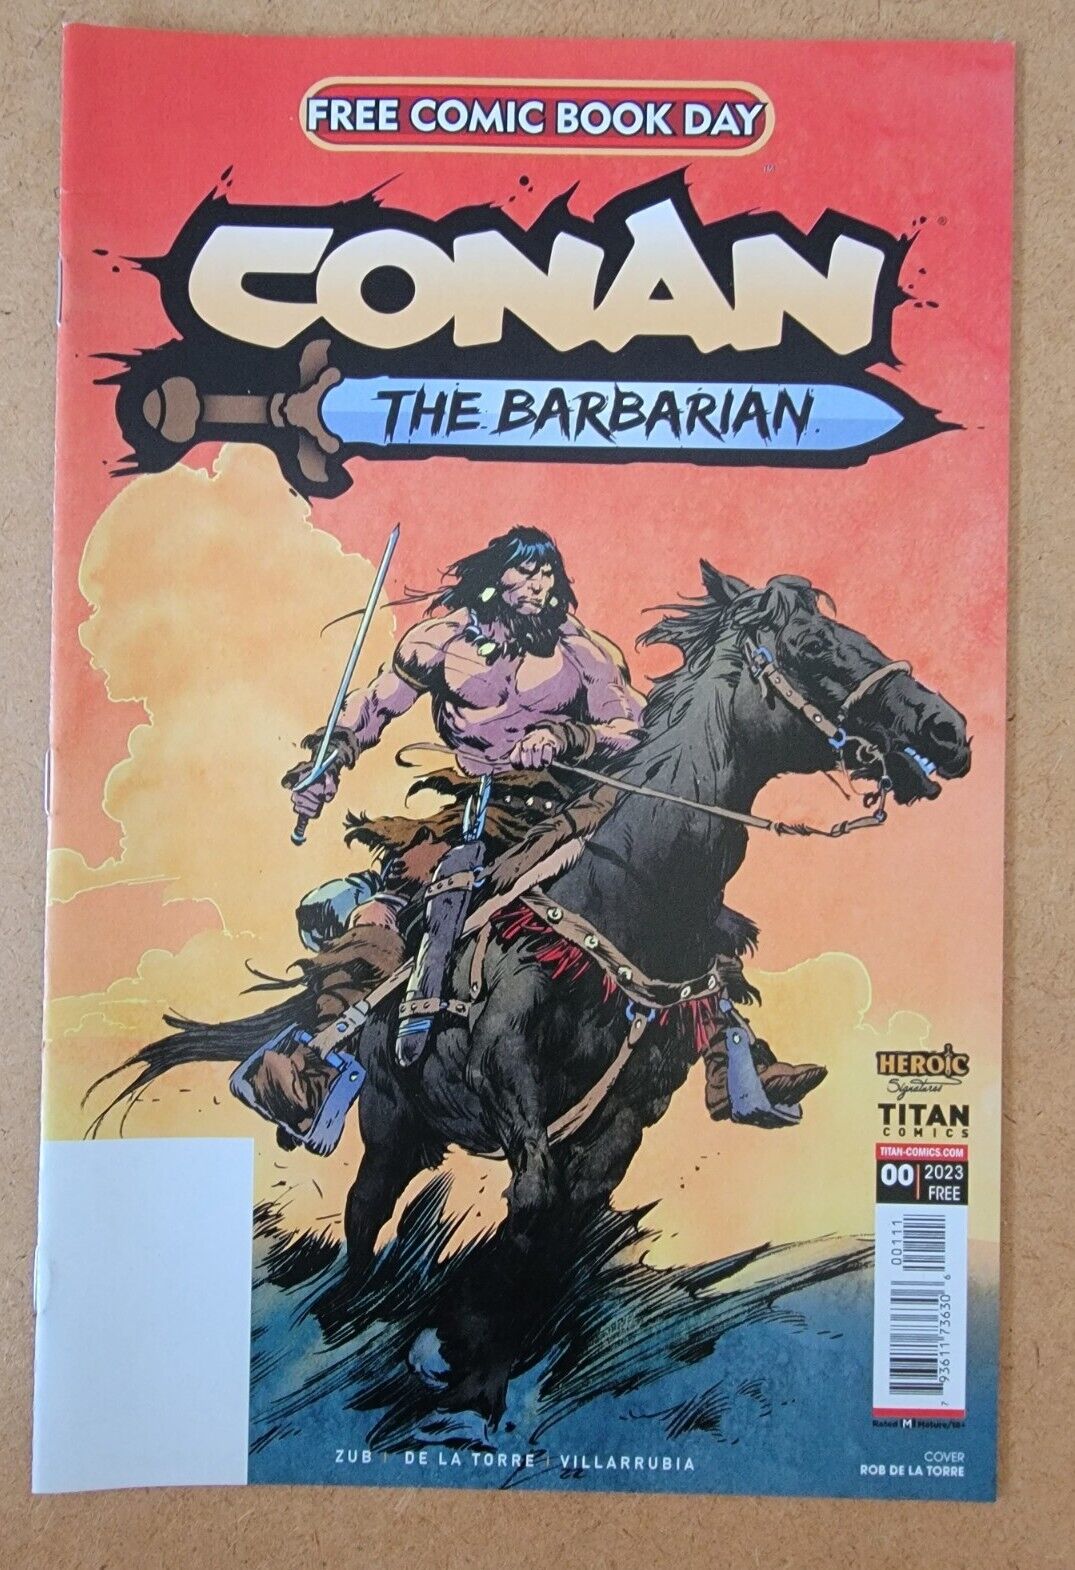 Conan the Barbarian FCBD 2023 Special 1 Jim Zub Free Comic Book Day FCBD New NM